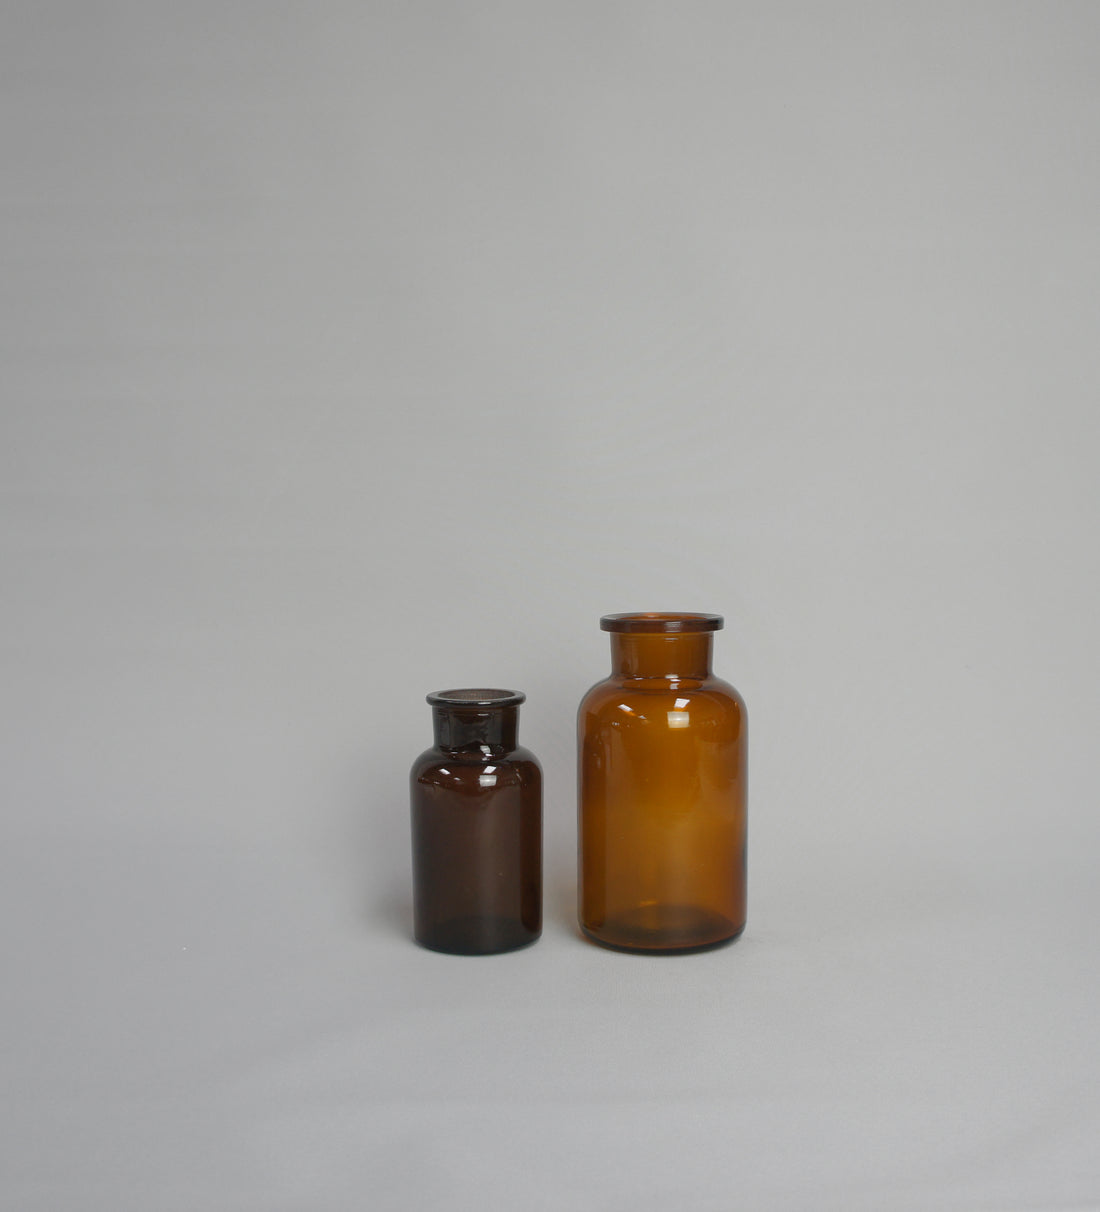 Apothekerflasche, Farbe braun, zylindrisch mit Weithals, in 2 Größen erhältlich